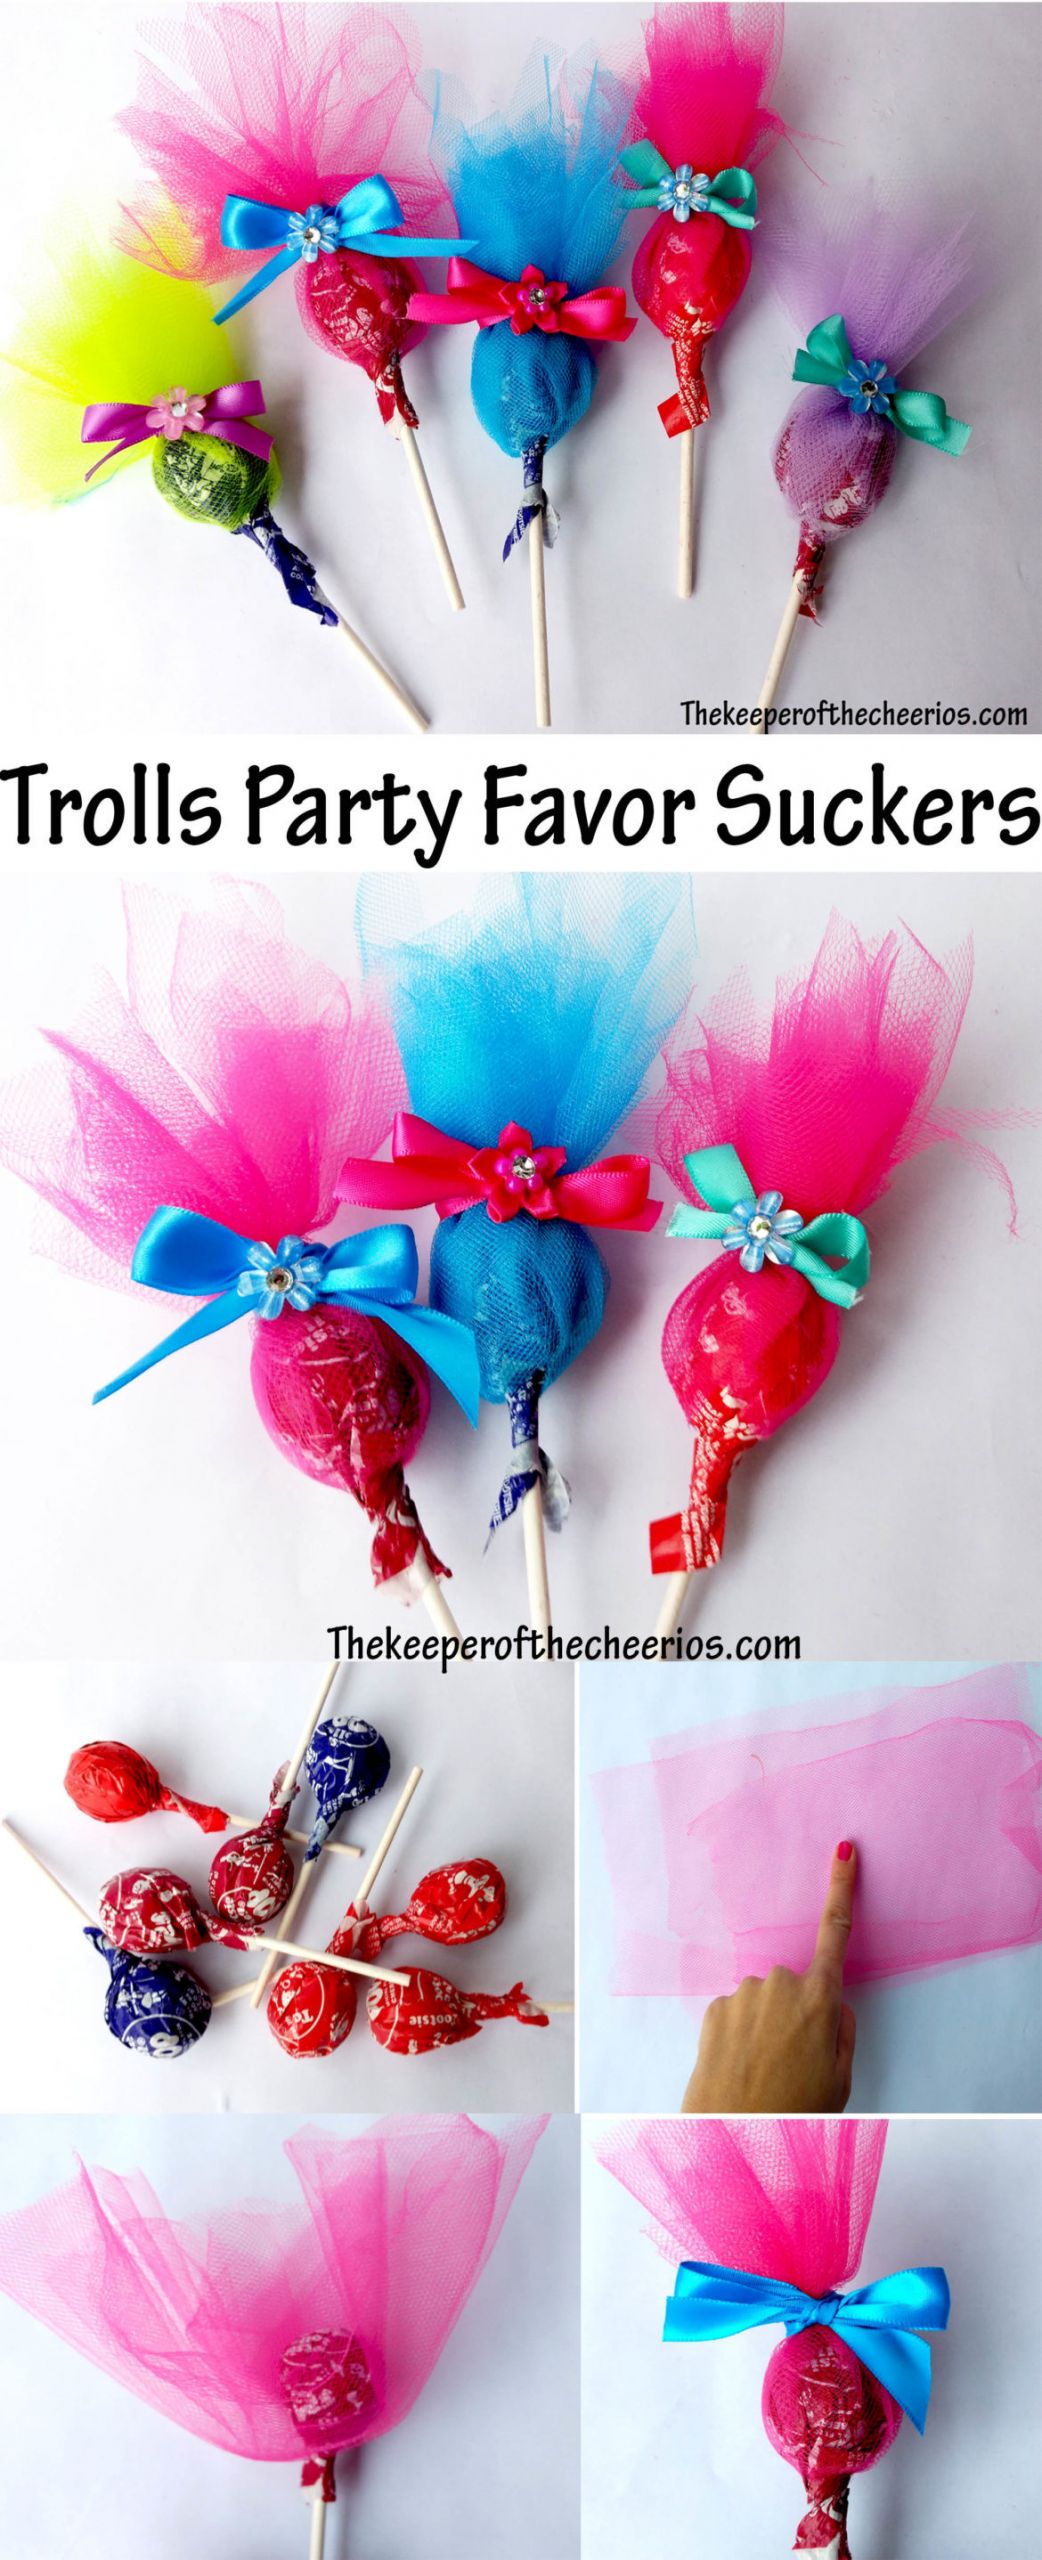 Trolls Party Favor Ideas
 Trolls Party Favor Suckers